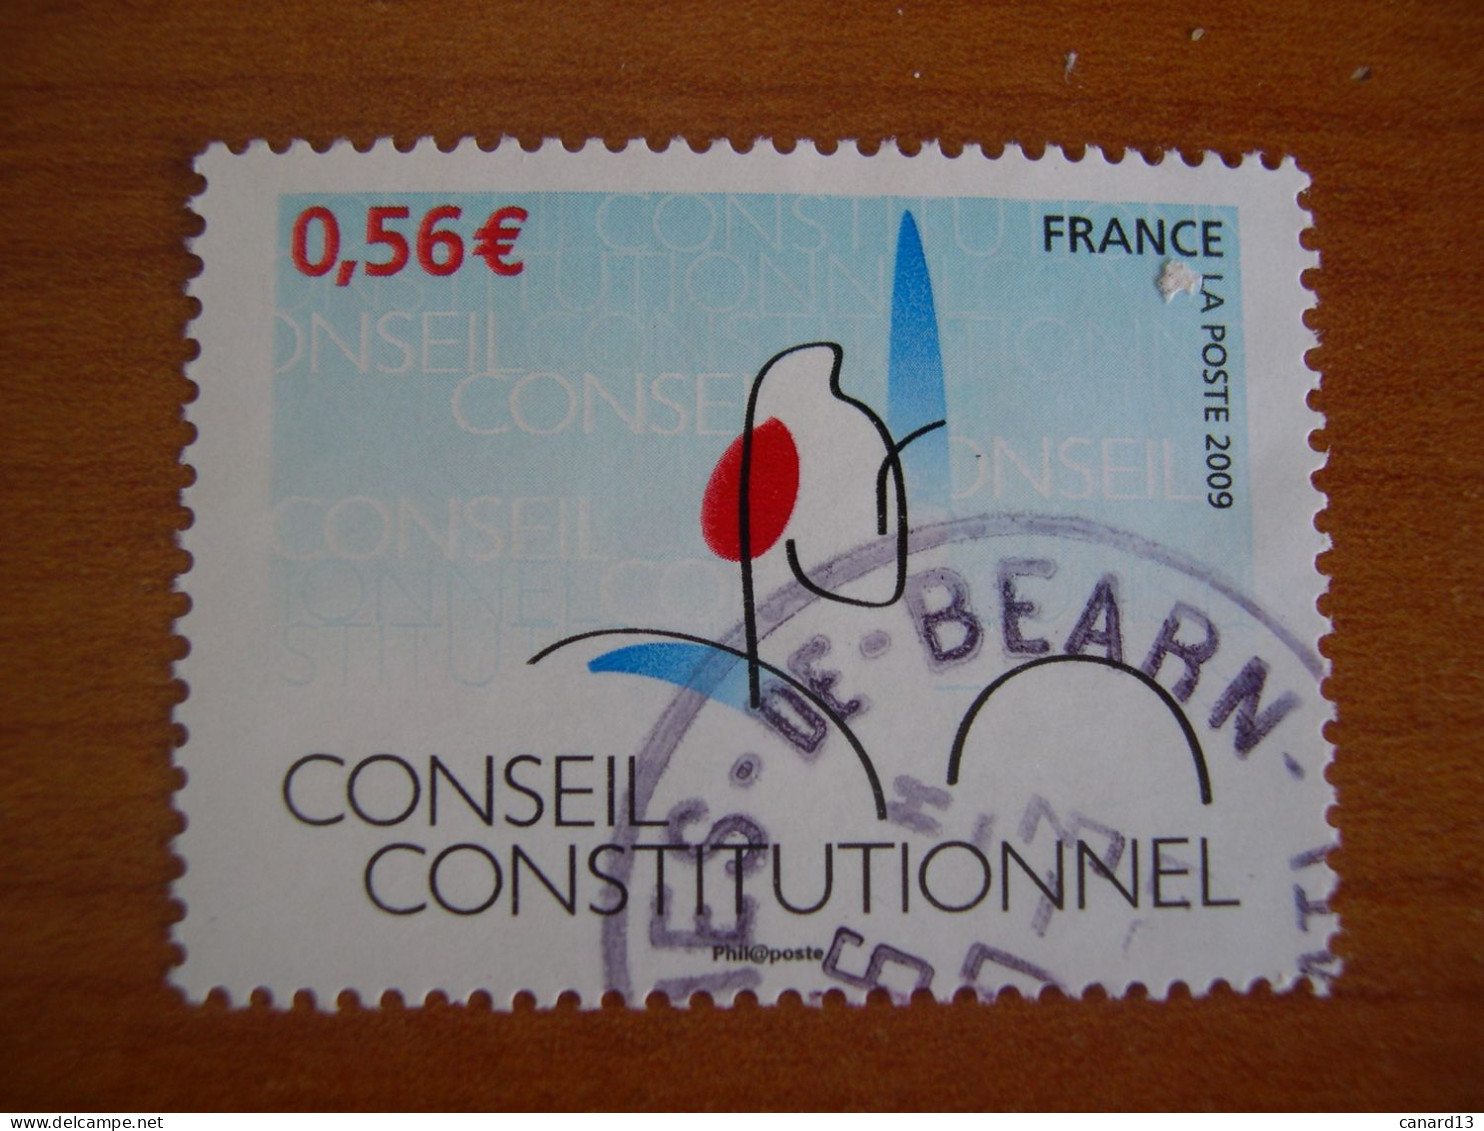 France Obl   N° 4347 Cachet Rond Noir - Used Stamps